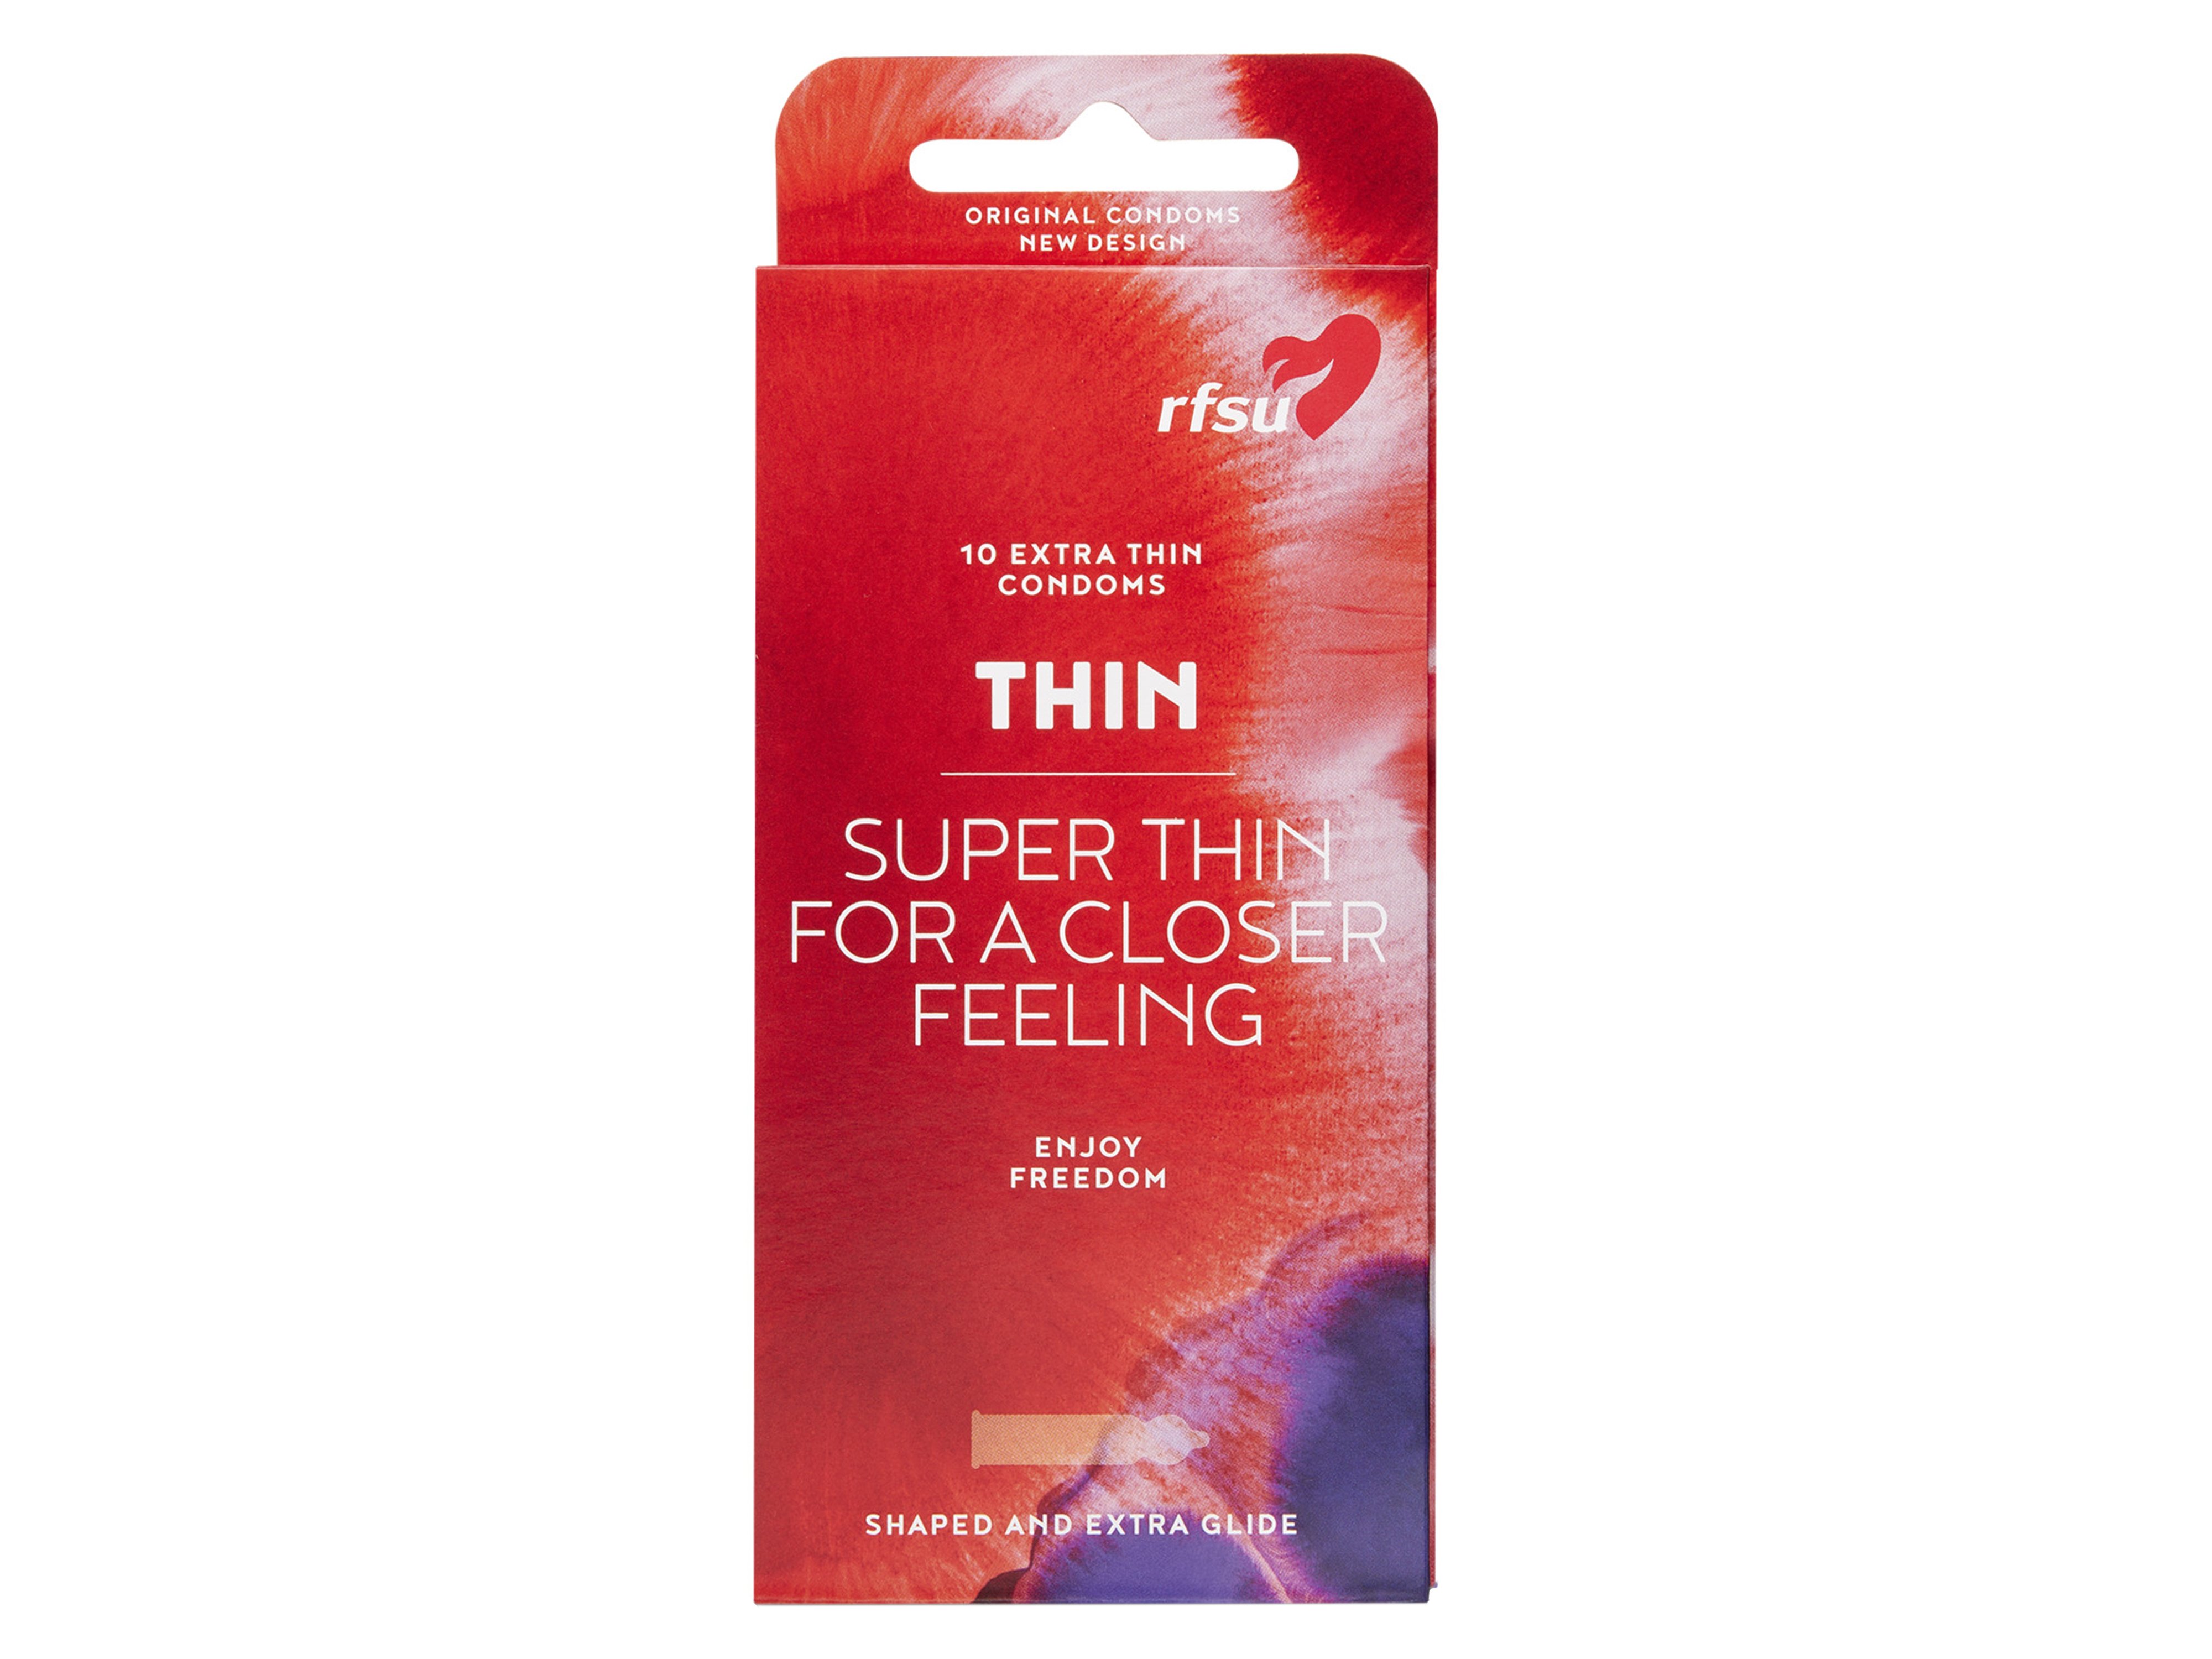 Rfsu Thin kondom, 10 stk